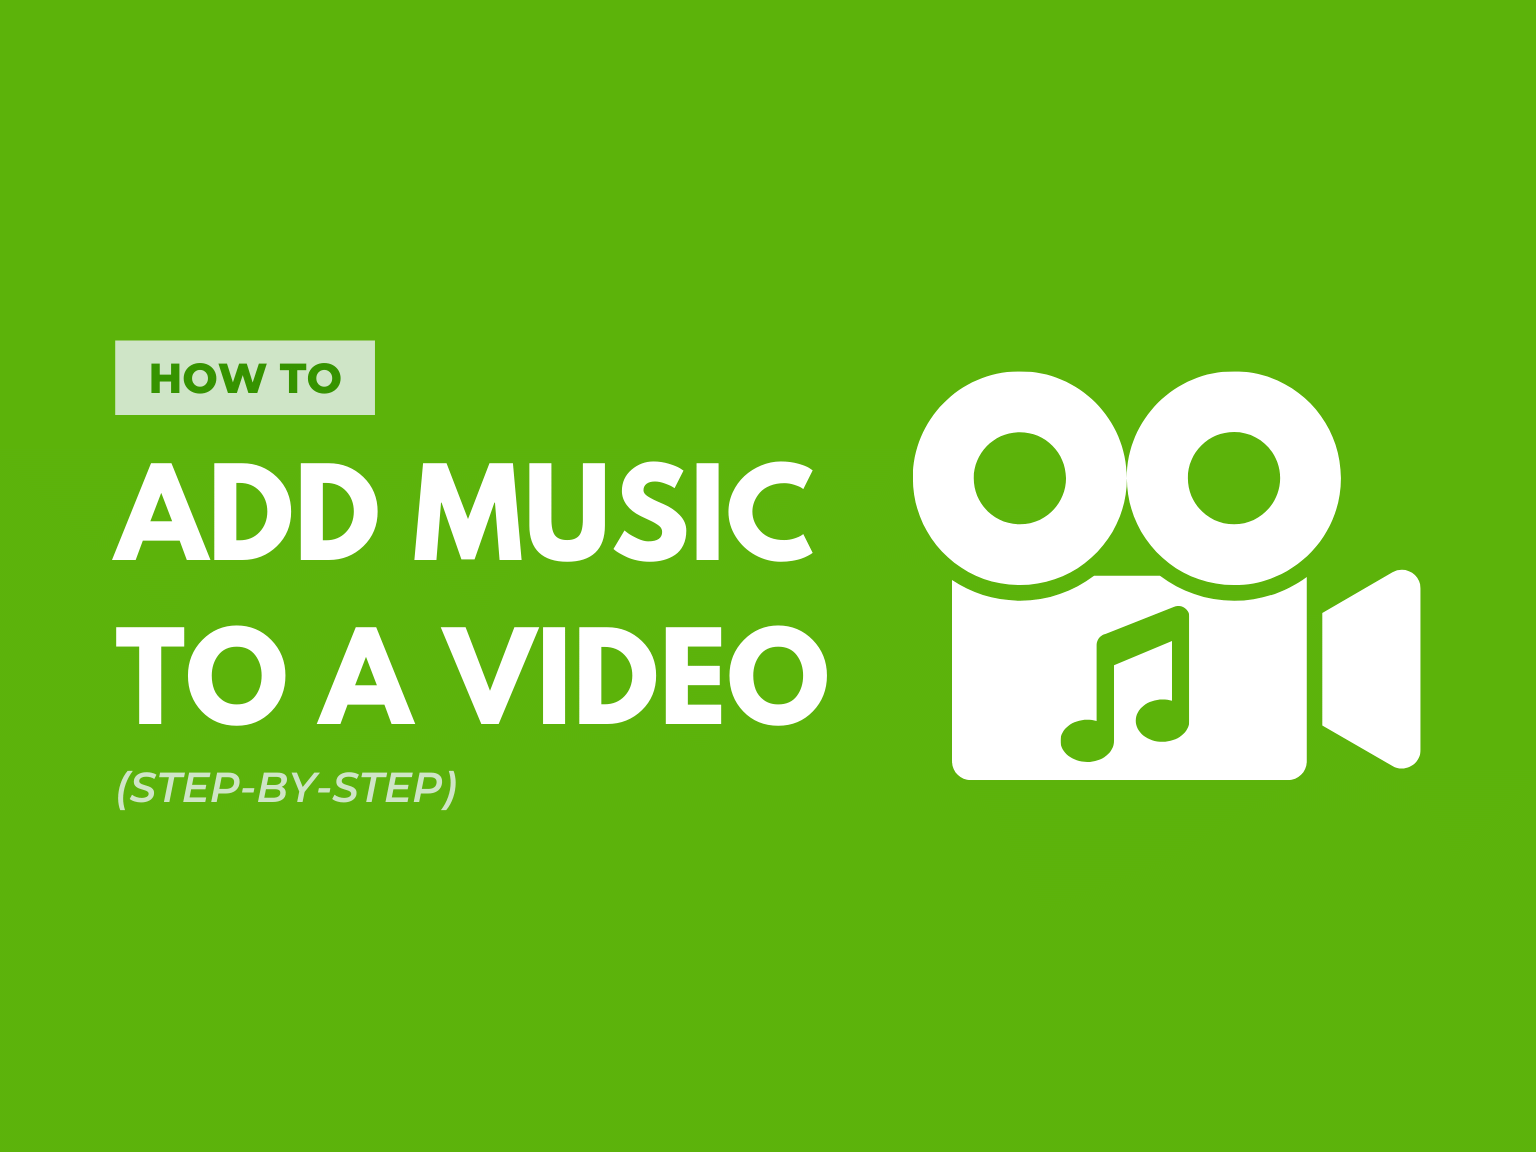 Bạn muốn thêm nhạc vào video của mình nhưng không biết phải làm thế nào? Đừng lo, hướng dẫn thêm nhạc vào video sẽ giúp bạn tạo ra những video sinh nhật với những bản nhạc hay và phù hợp nhất với chủ đề của bạn. Bức ảnh sẽ giúp bạn nhận biết và lựa chọn những bản nhạc thật ấn tượng để thêm vào video của mình.